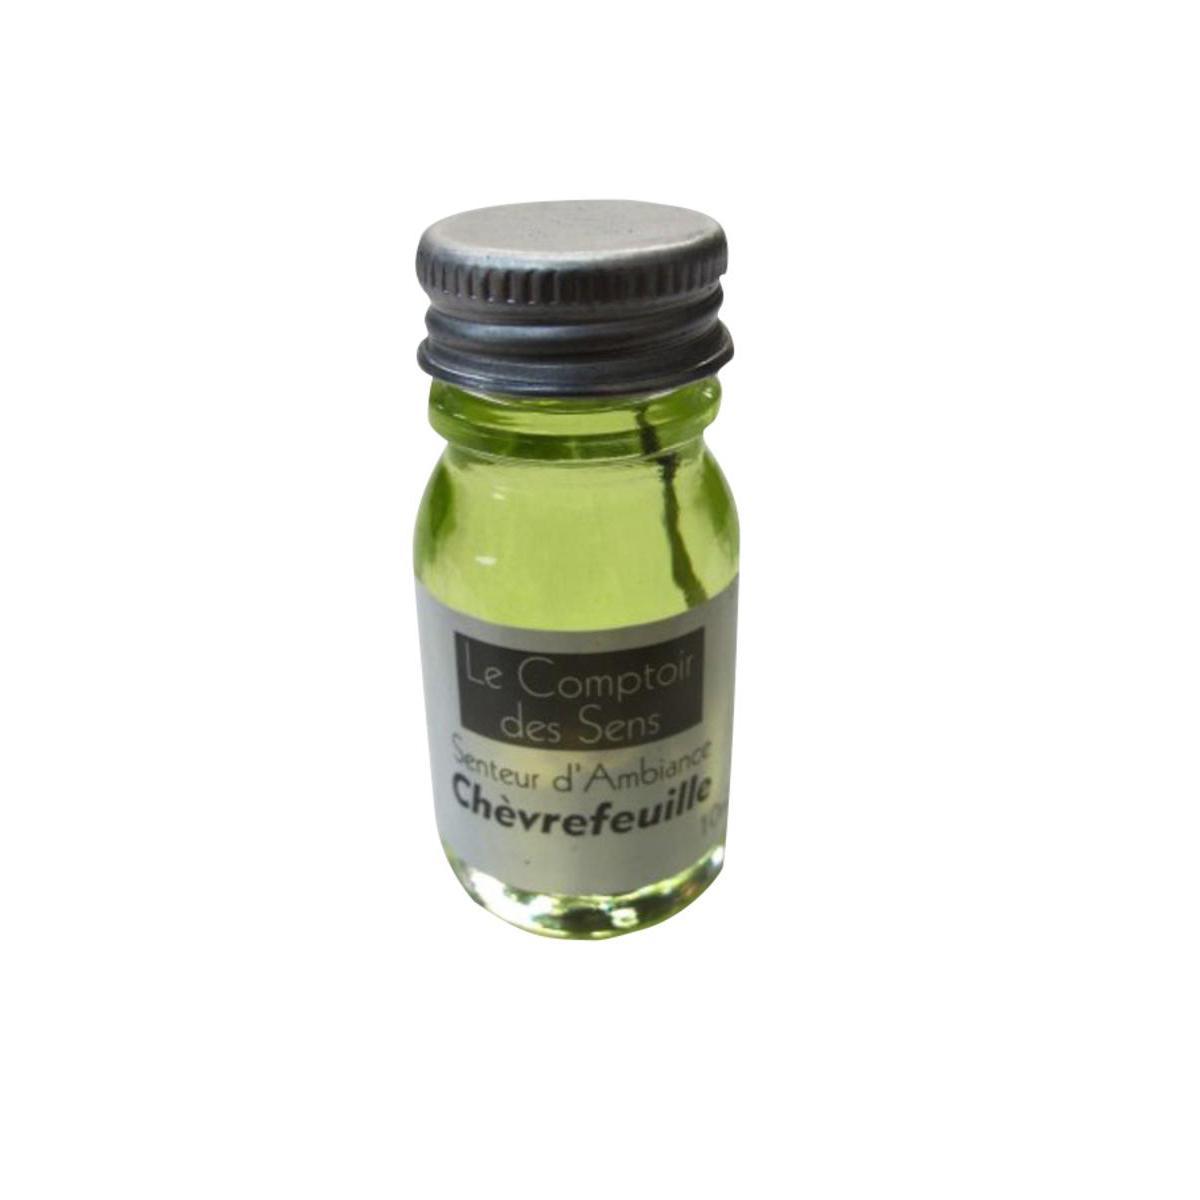 Extrait senteur chèvrefeuille - Verre - 10 ml - Vert